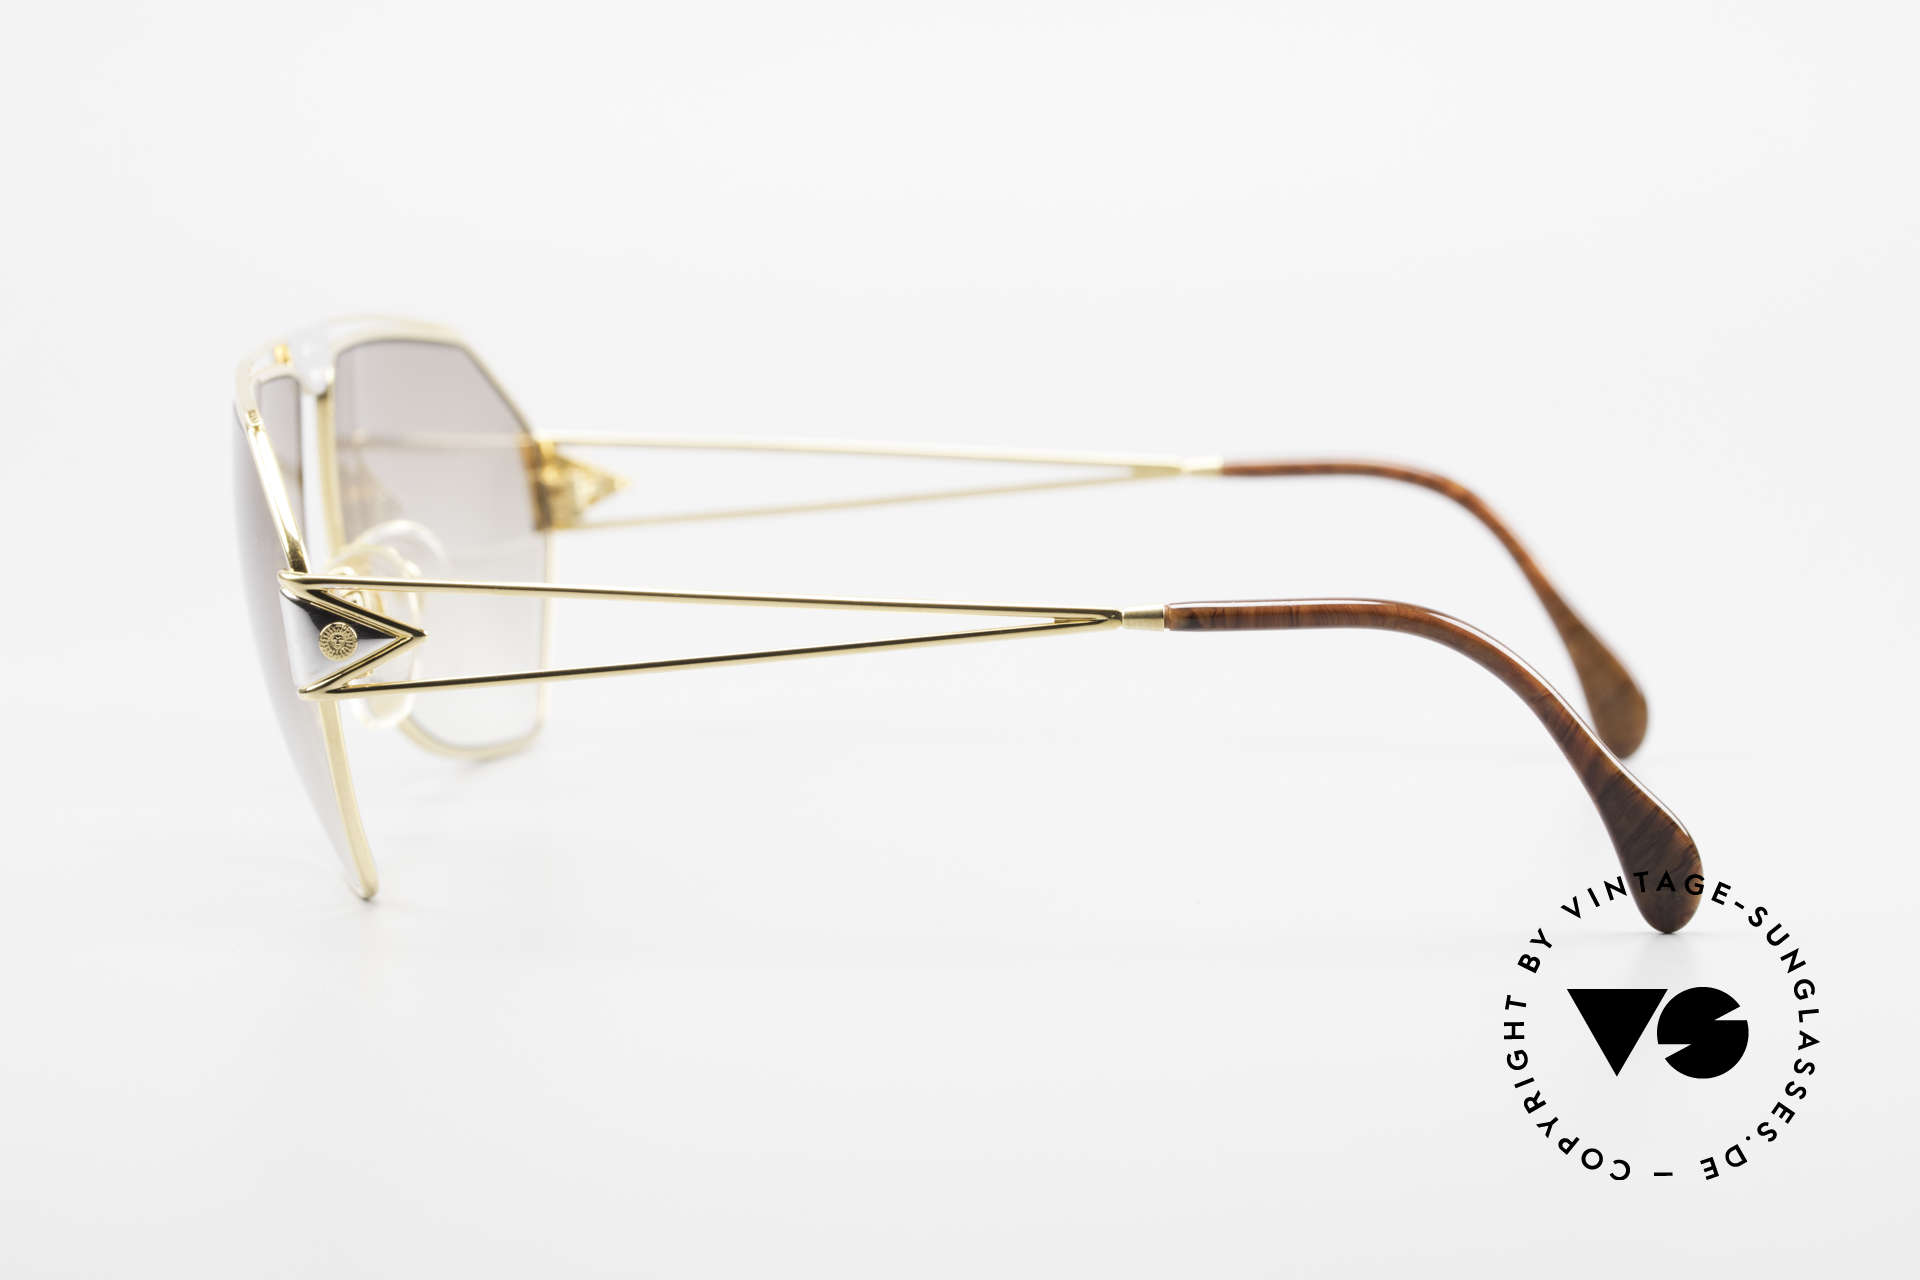 St. Moritz 403 Luxury Jupiter Sunglasses 80s, light brown tinted sun lenses (also wearable at night), Made for Men